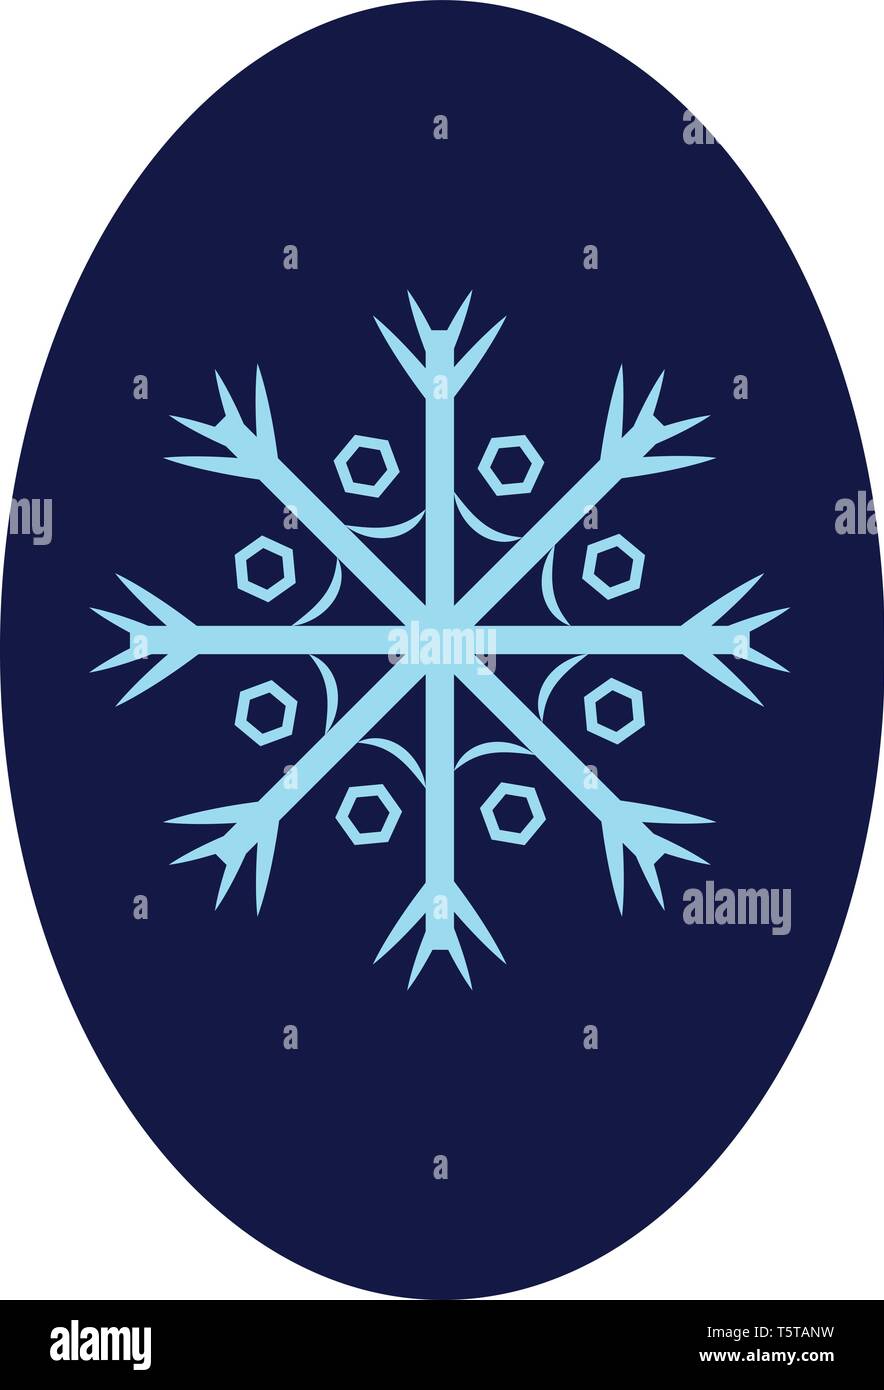 Eine Flocke Schnee vor allem einen gefiederten Ice Crystal in der Regel mit empfindlichen versechsfacht Symmetrie über ovalen blauen Hintergrund Vektor in der Farbe der Zeichnung Stock Vektor